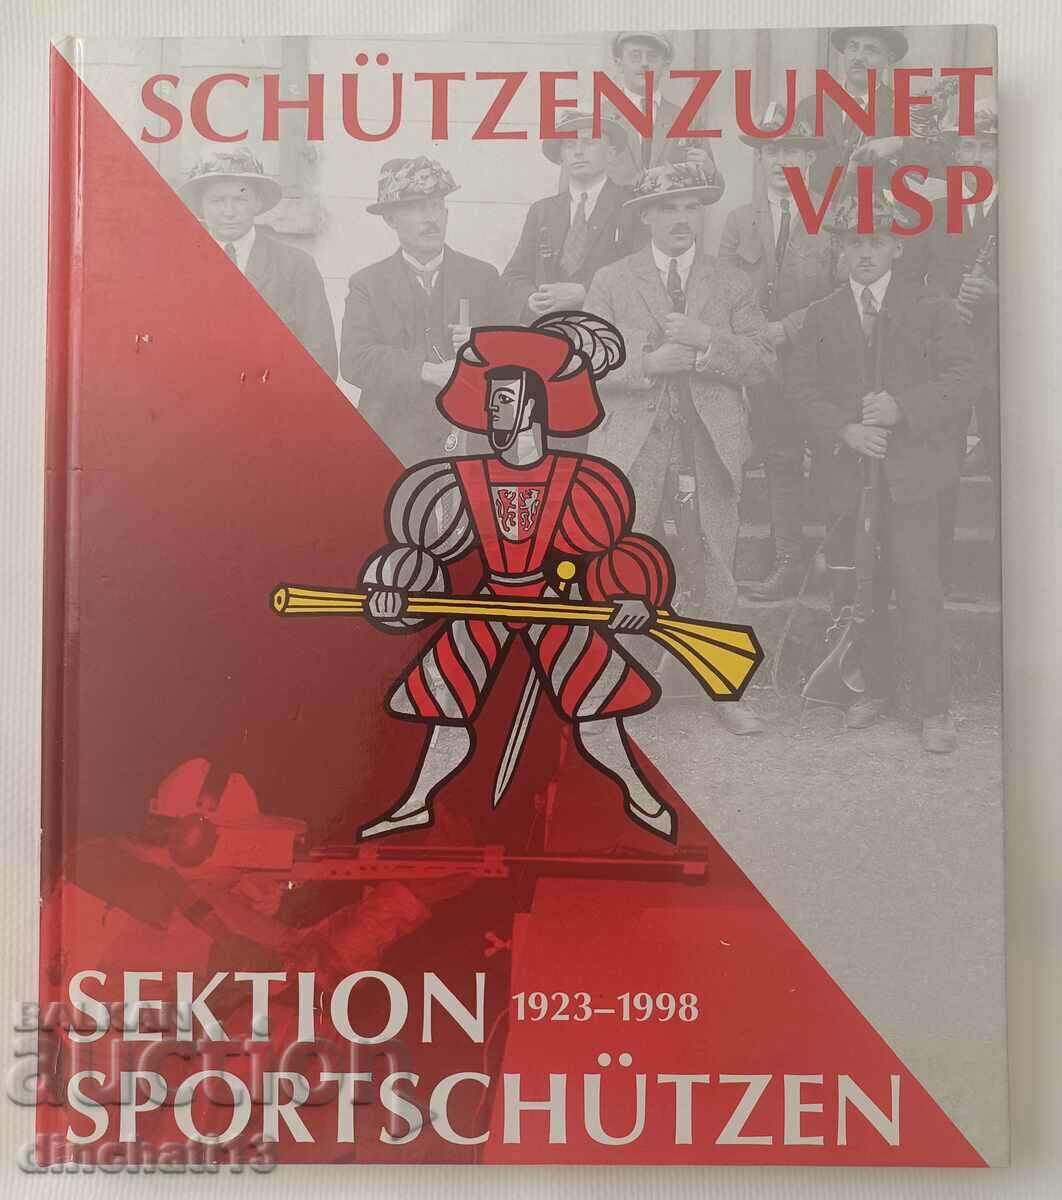 Schützenzunft Visp Sektion Sportschützen 1923 - 1998 Trageri